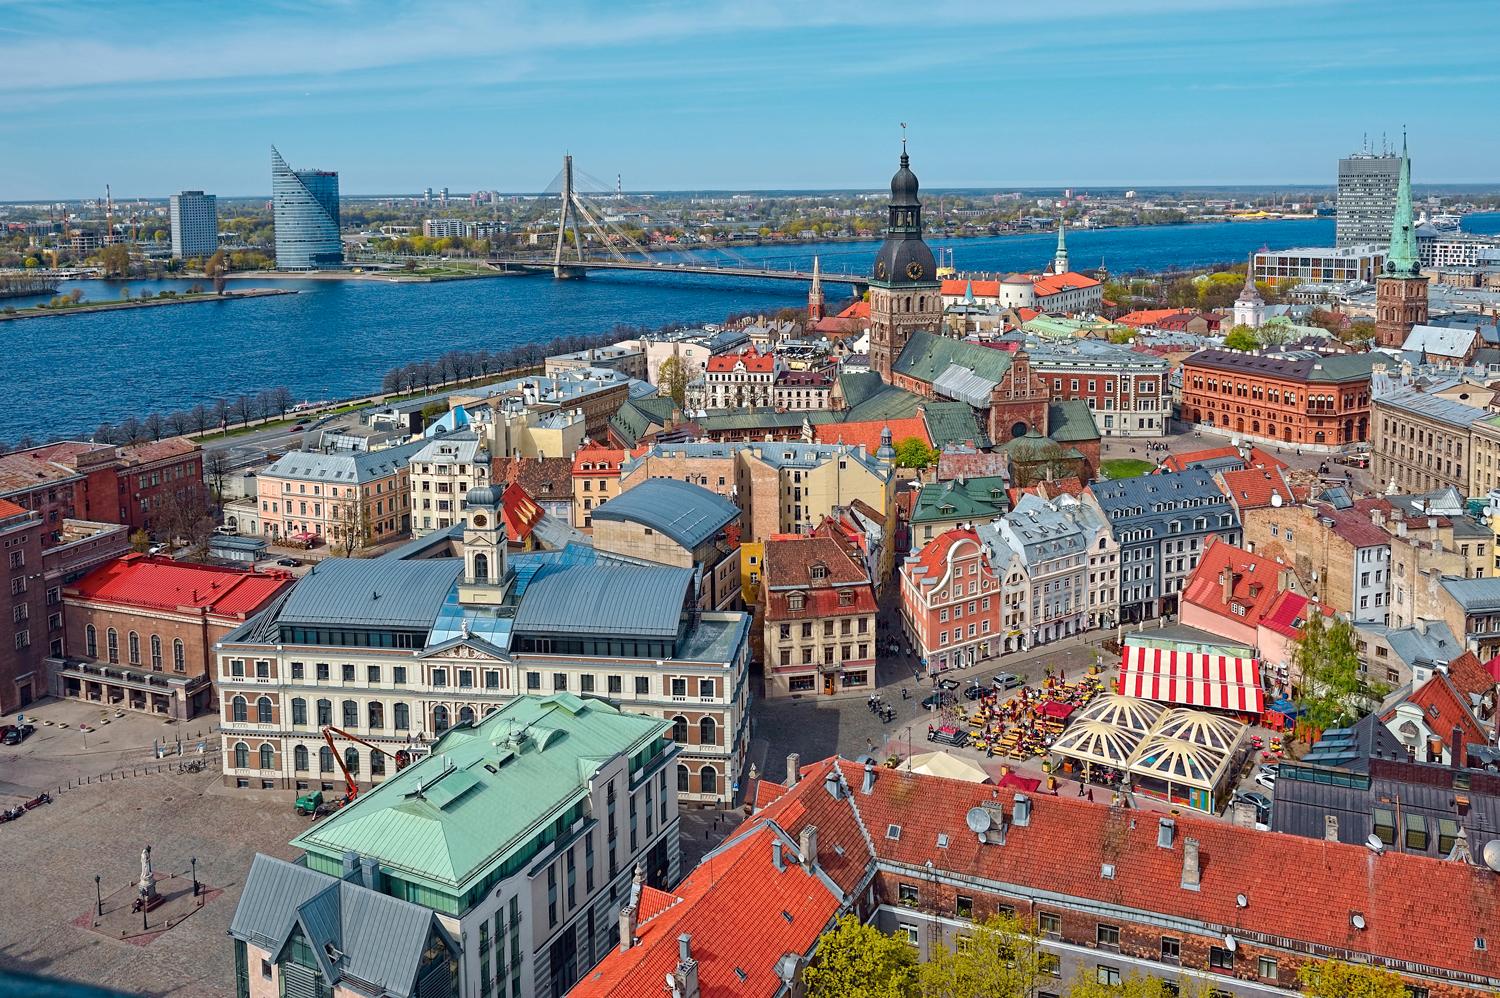 Riga är ett av våra närmsta budgetresmål. Men vill du lyxa till det för en liten slant - åk nu. Det här är ett resmål som kommer bli dyrare.